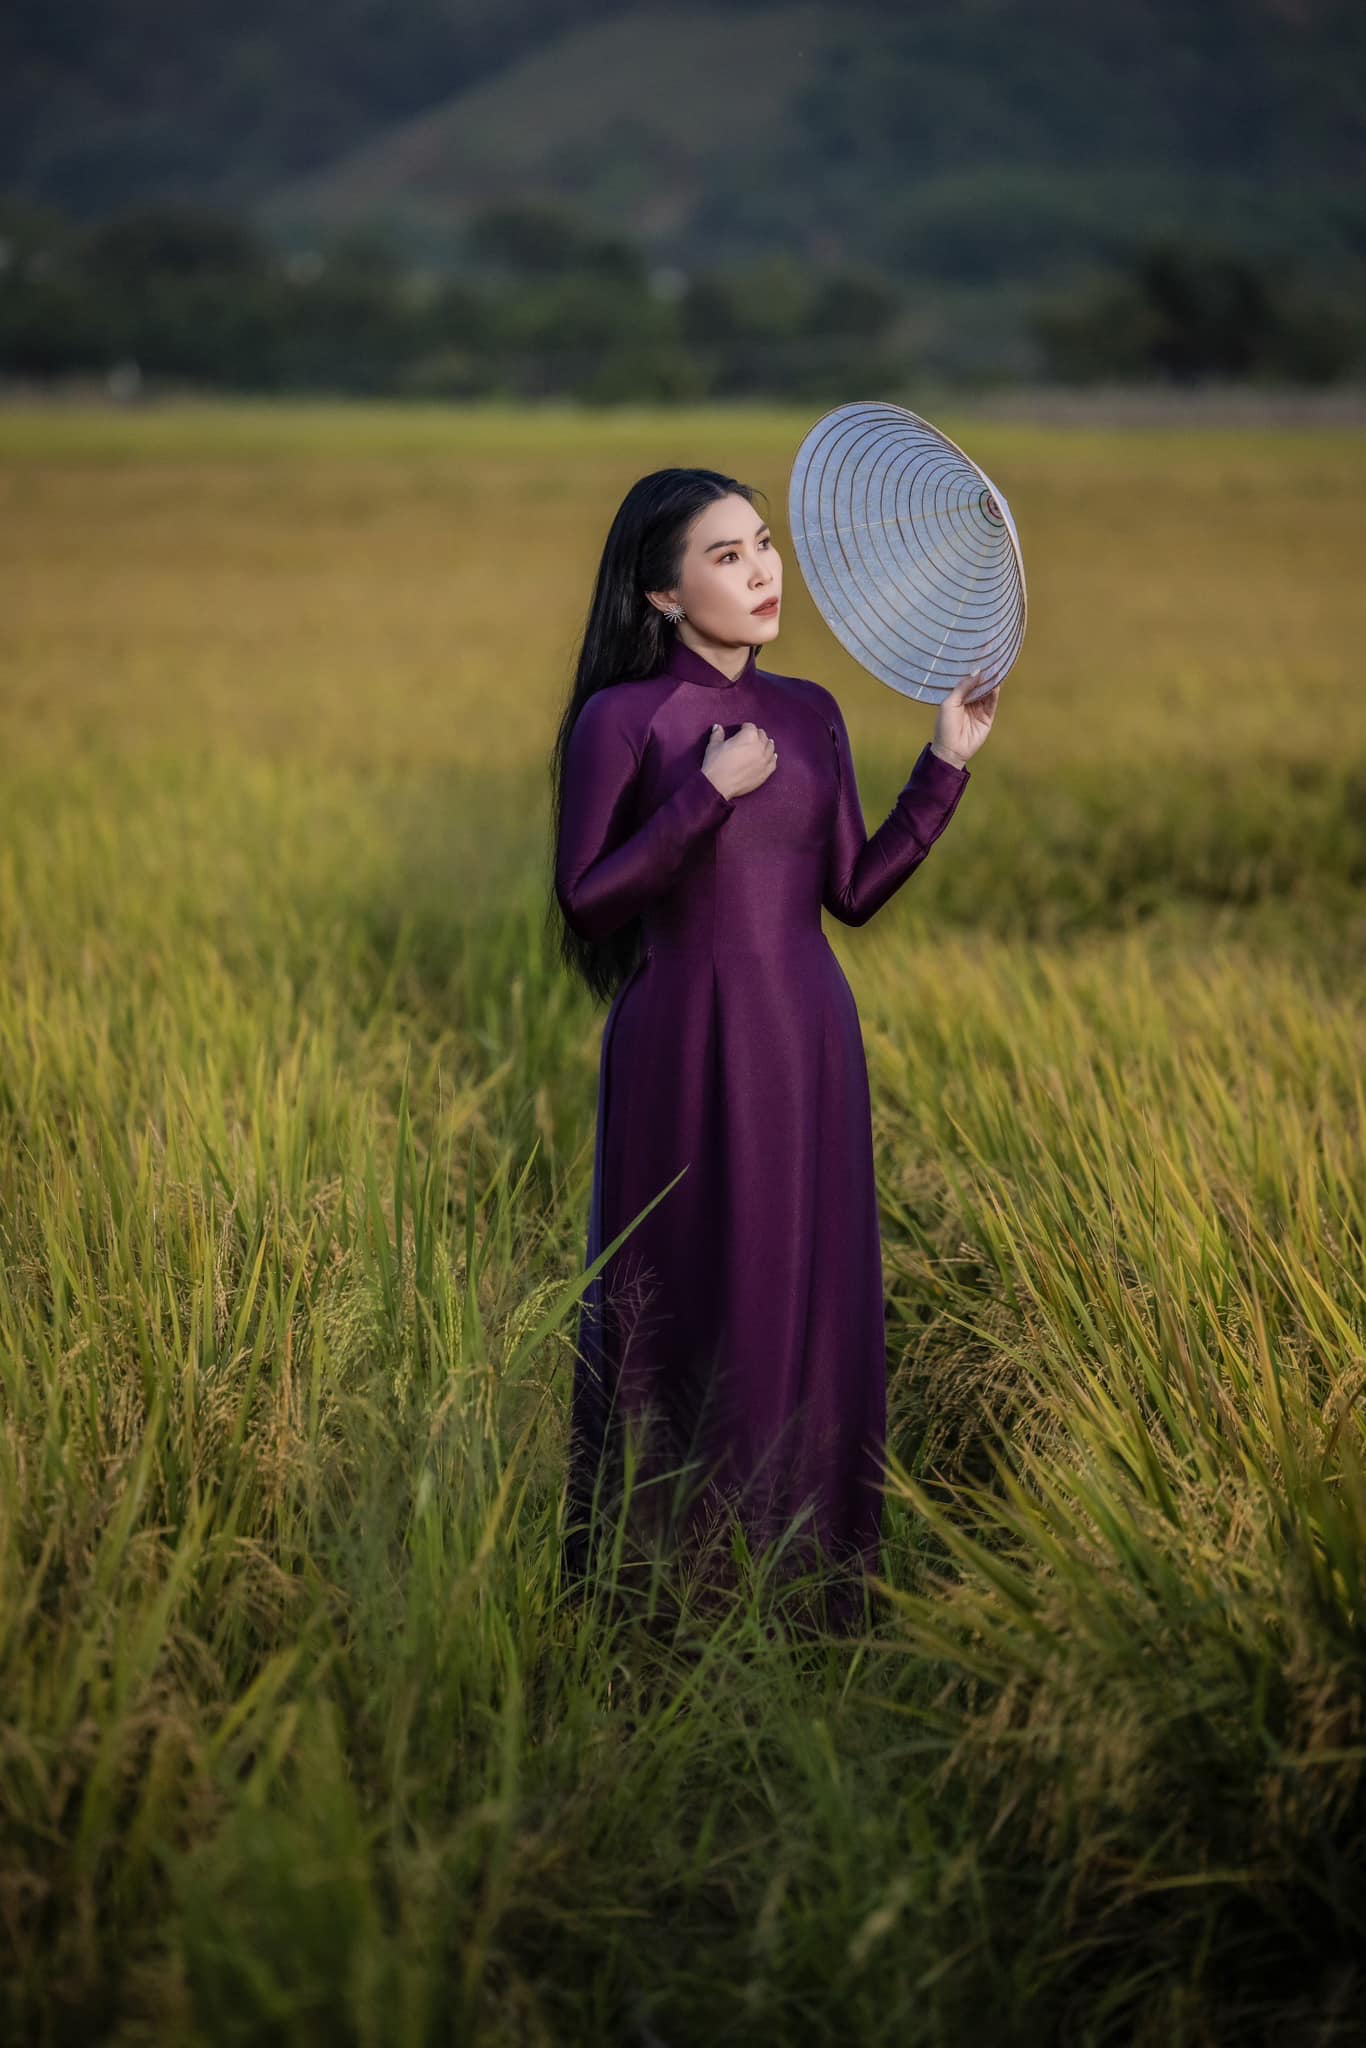 Chup ảnh áo dài đẹp Tại hồ Đa Tôn Đồng Nai với Vải áo dài Cẩm Tú 2